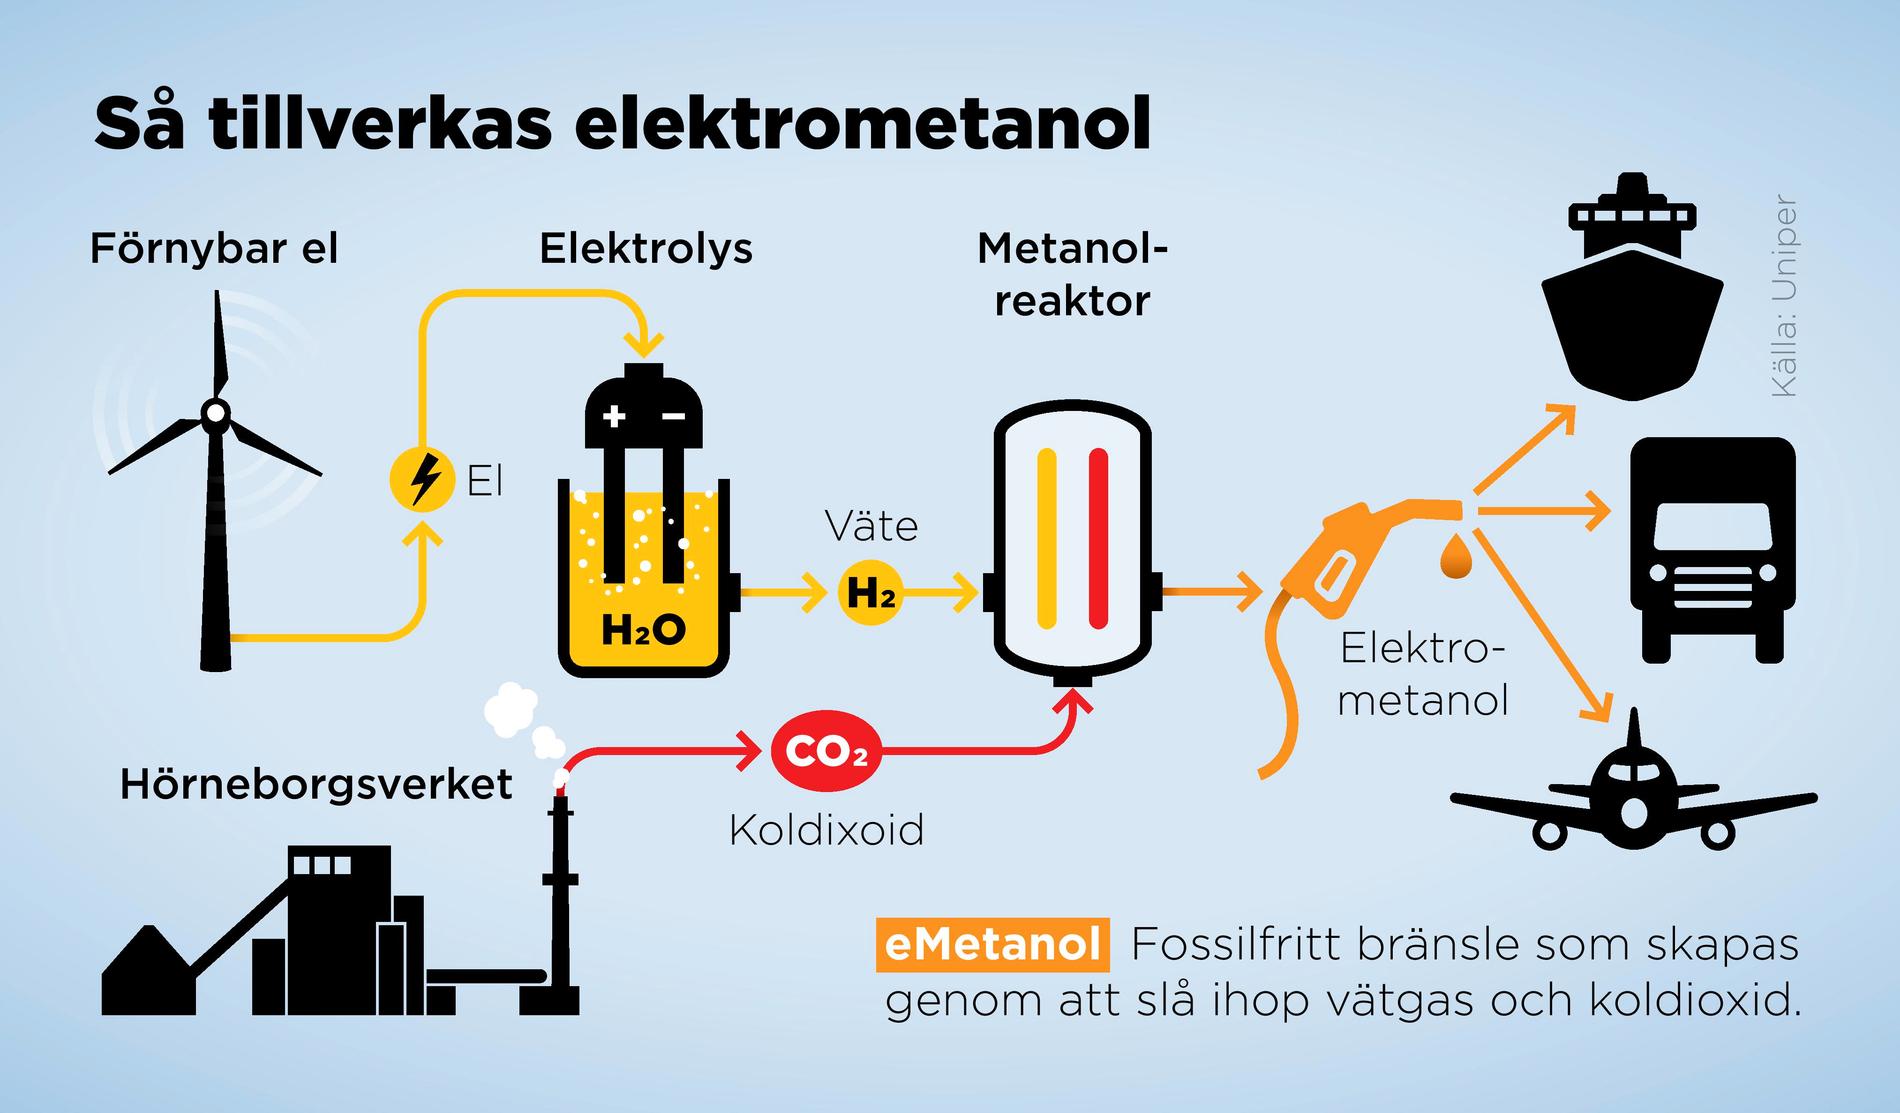 Elektrometanol är ett fossilfritt bränsle som skapas genom att slå ihop vätgas och koldioxid.